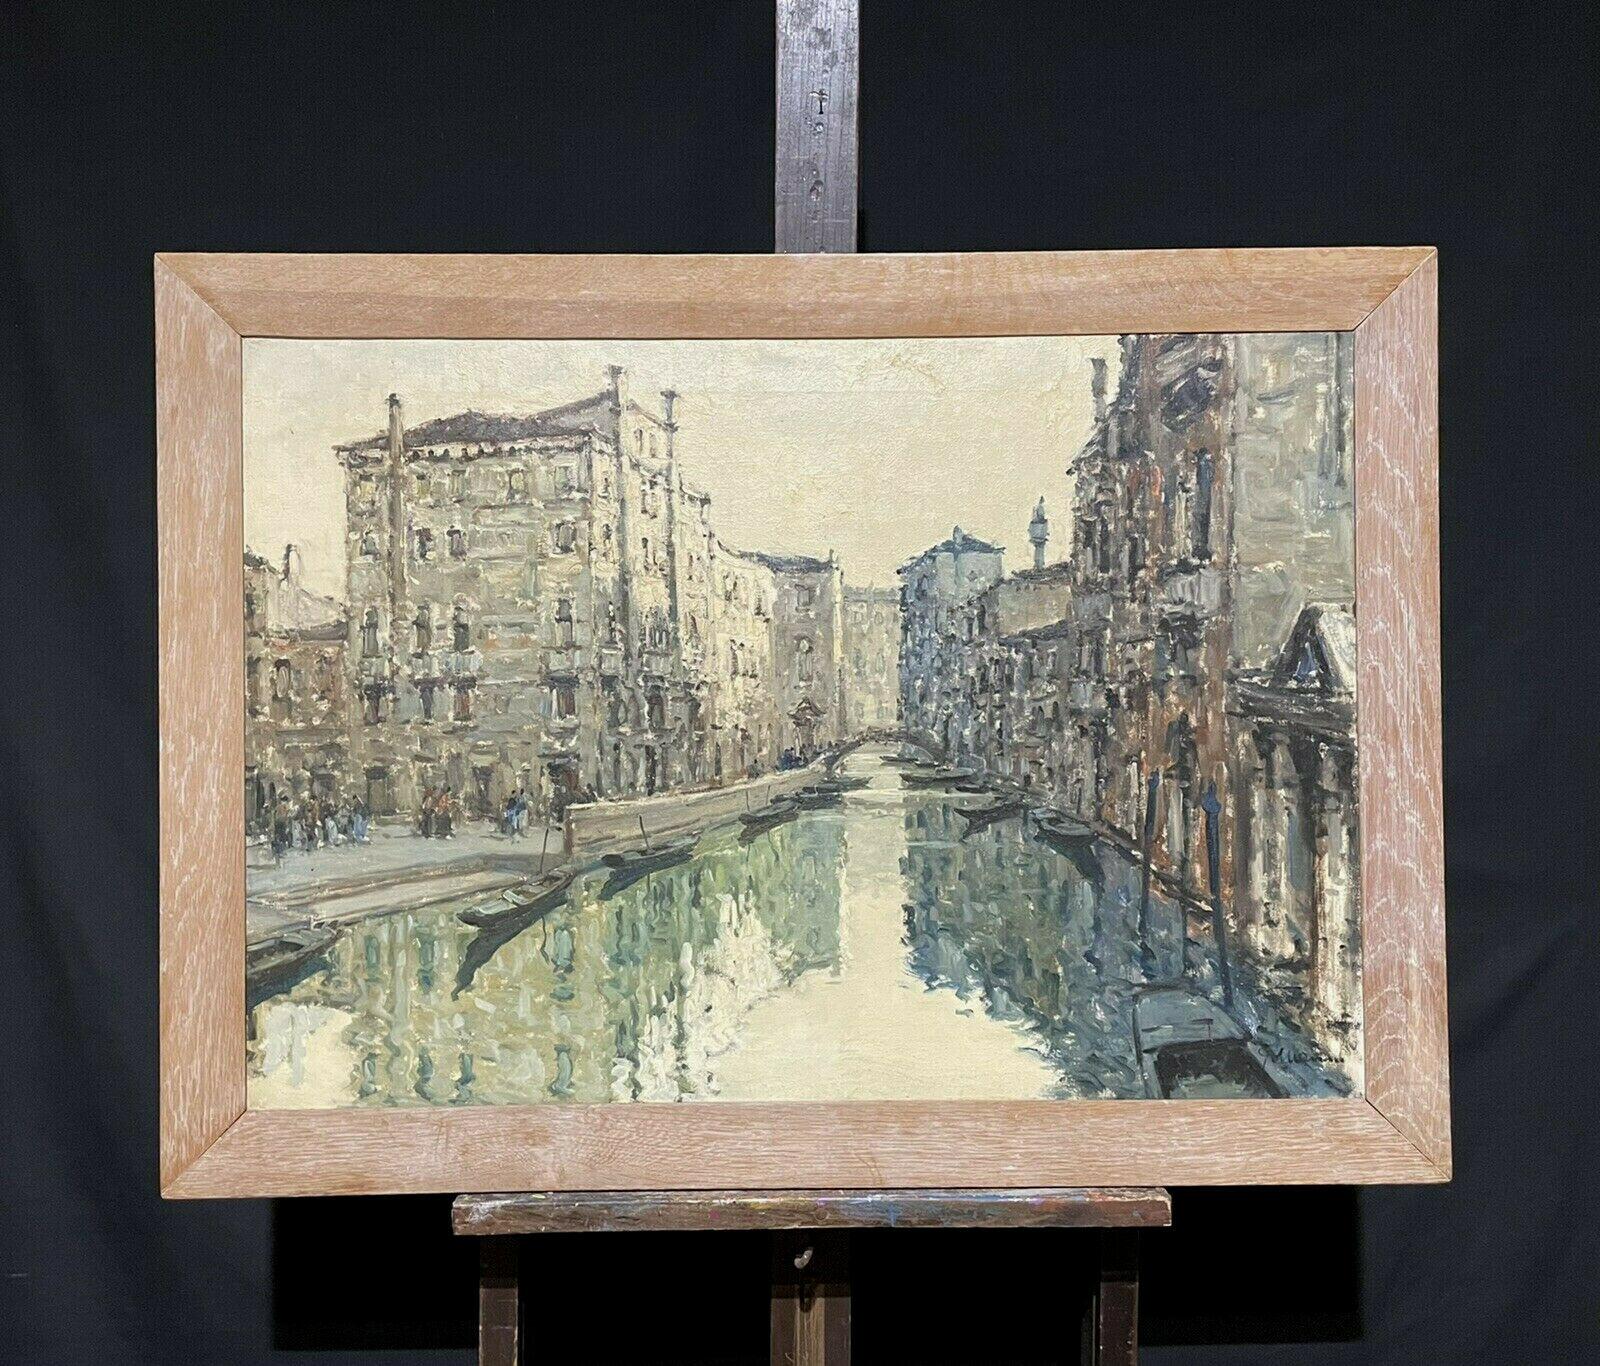 VERY LARGE PIÈCE D'OREILLE italienne SIGNÉE DES ANNÉES 1960 - SCENE CANAL DE TRANQUIL DE VOYAGES ImPRESSIONNistes - Painting de Italian artist